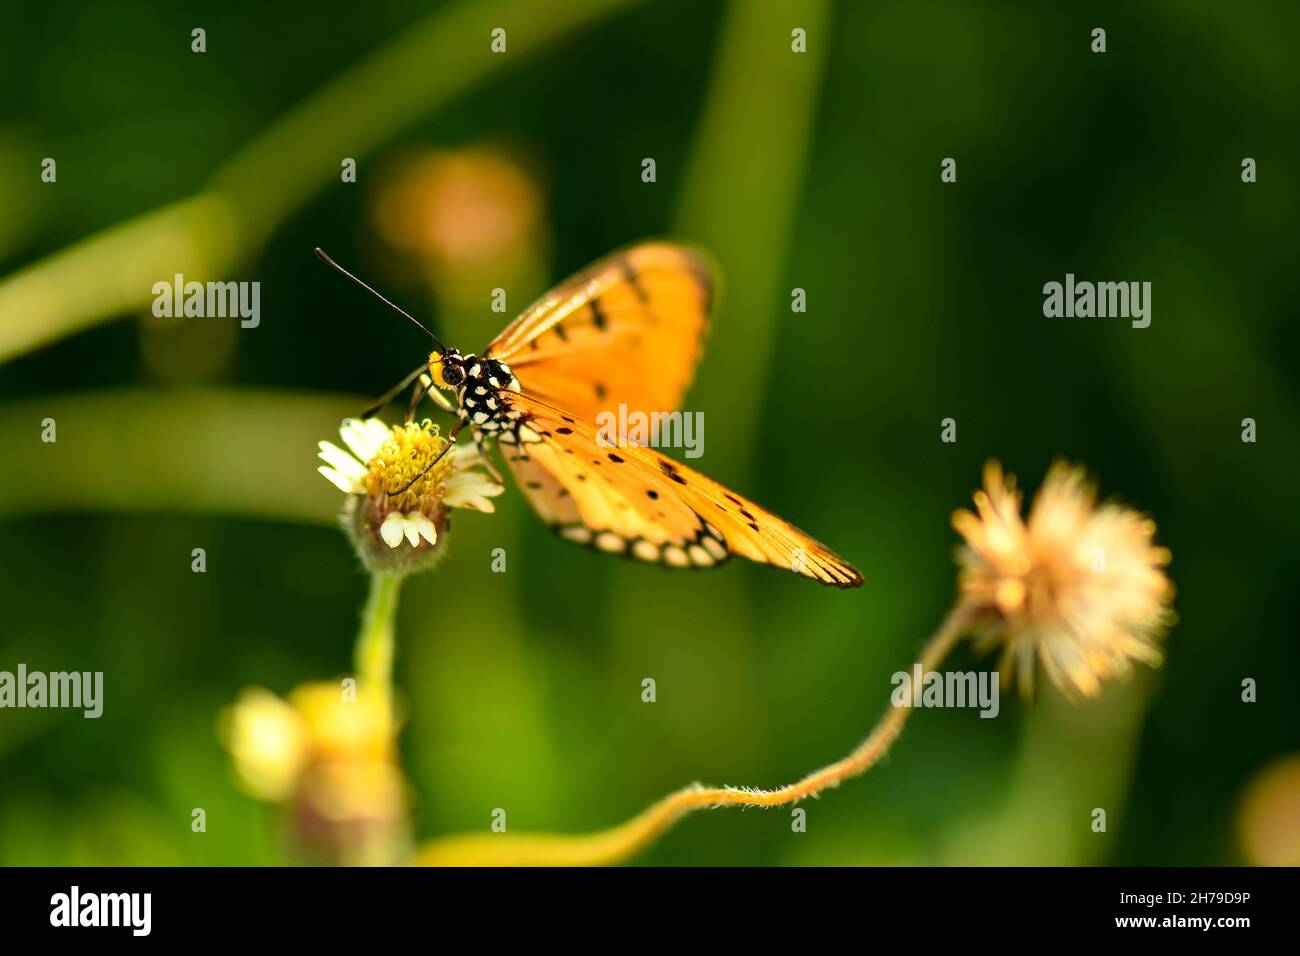 Mariposa dorada aterrizando en pequeñas flores blancas durante el verano Foto de stock